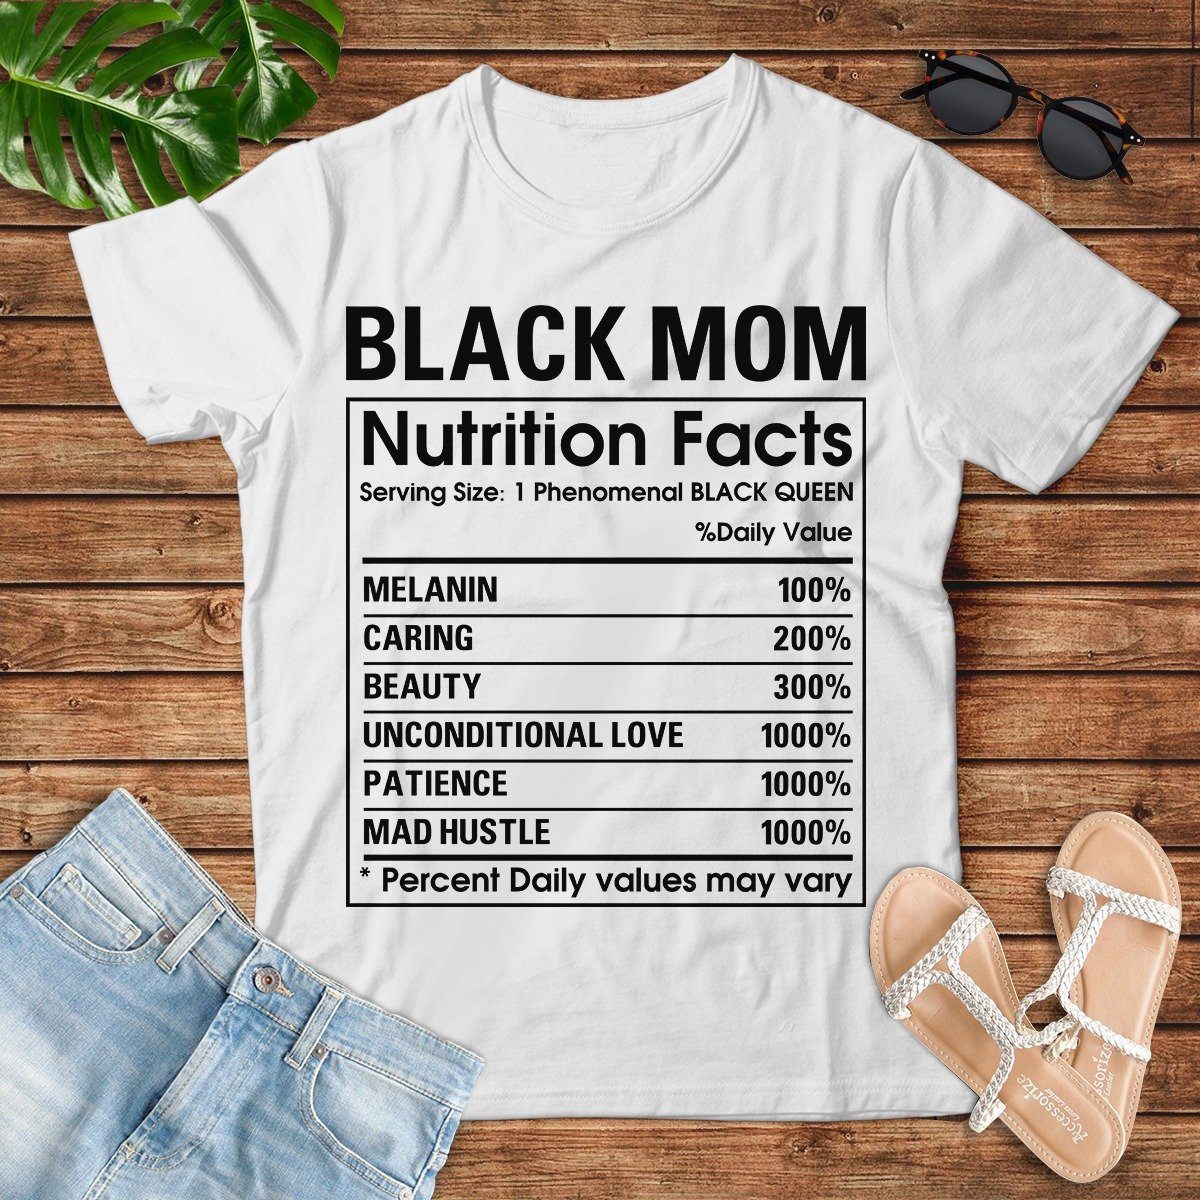 Black Mom Nutrition Facts T-Shirt Apparel CustomCat 